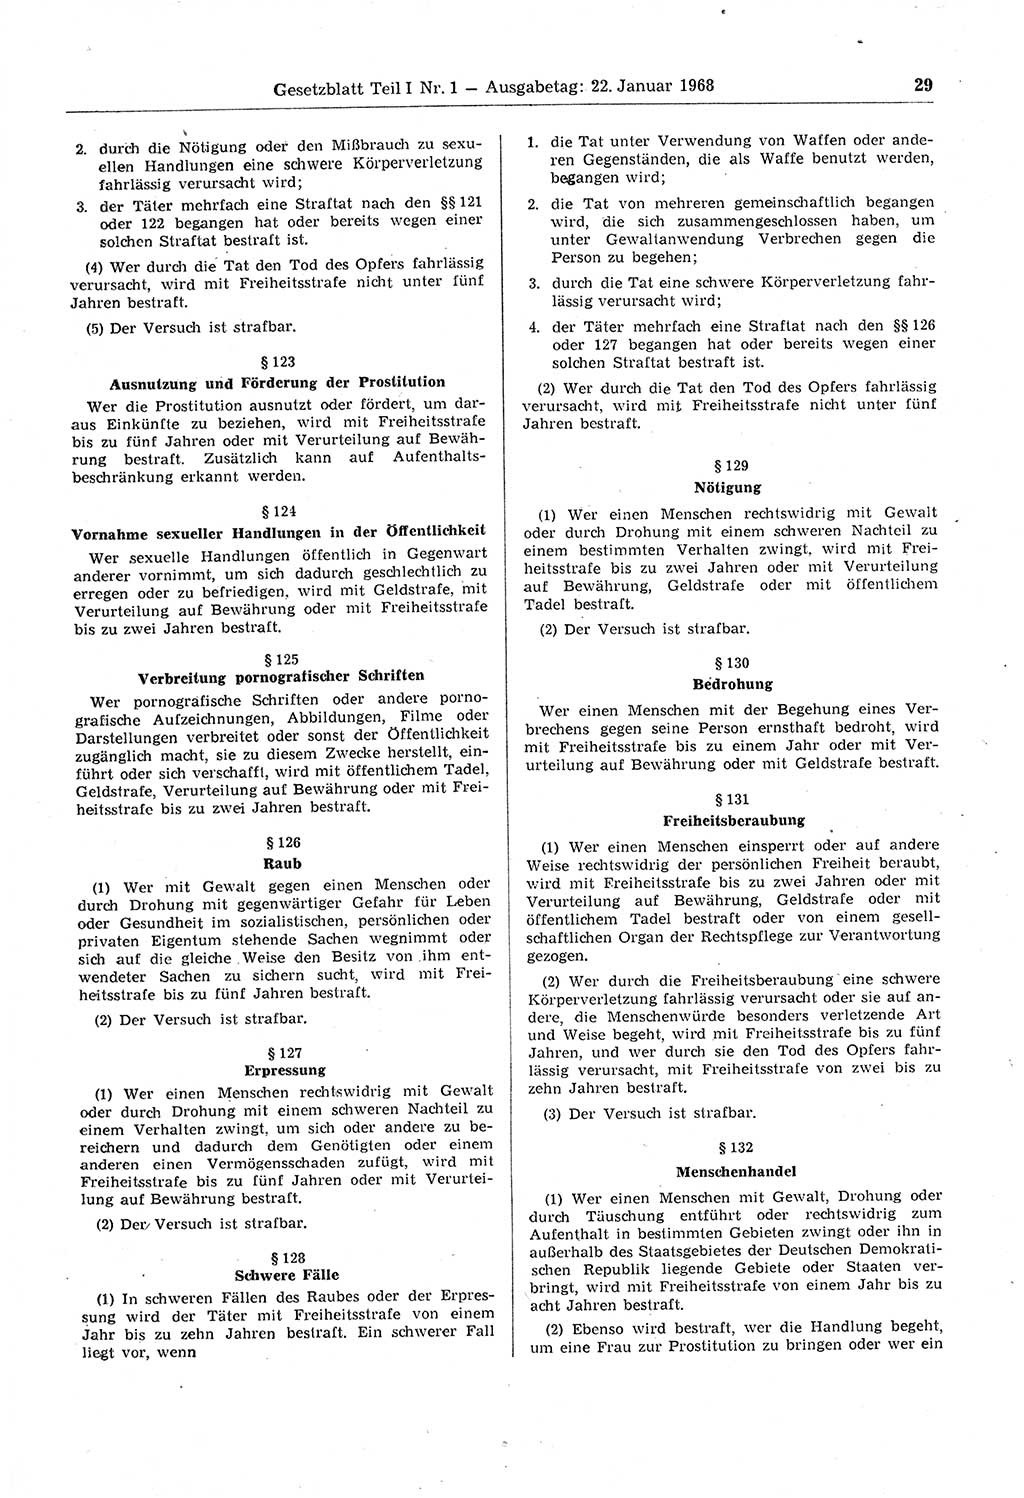 Gesetzblatt (GBl.) der Deutschen Demokratischen Republik (DDR) Teil Ⅰ 1968, Seite 29 (GBl. DDR Ⅰ 1968, S. 29)